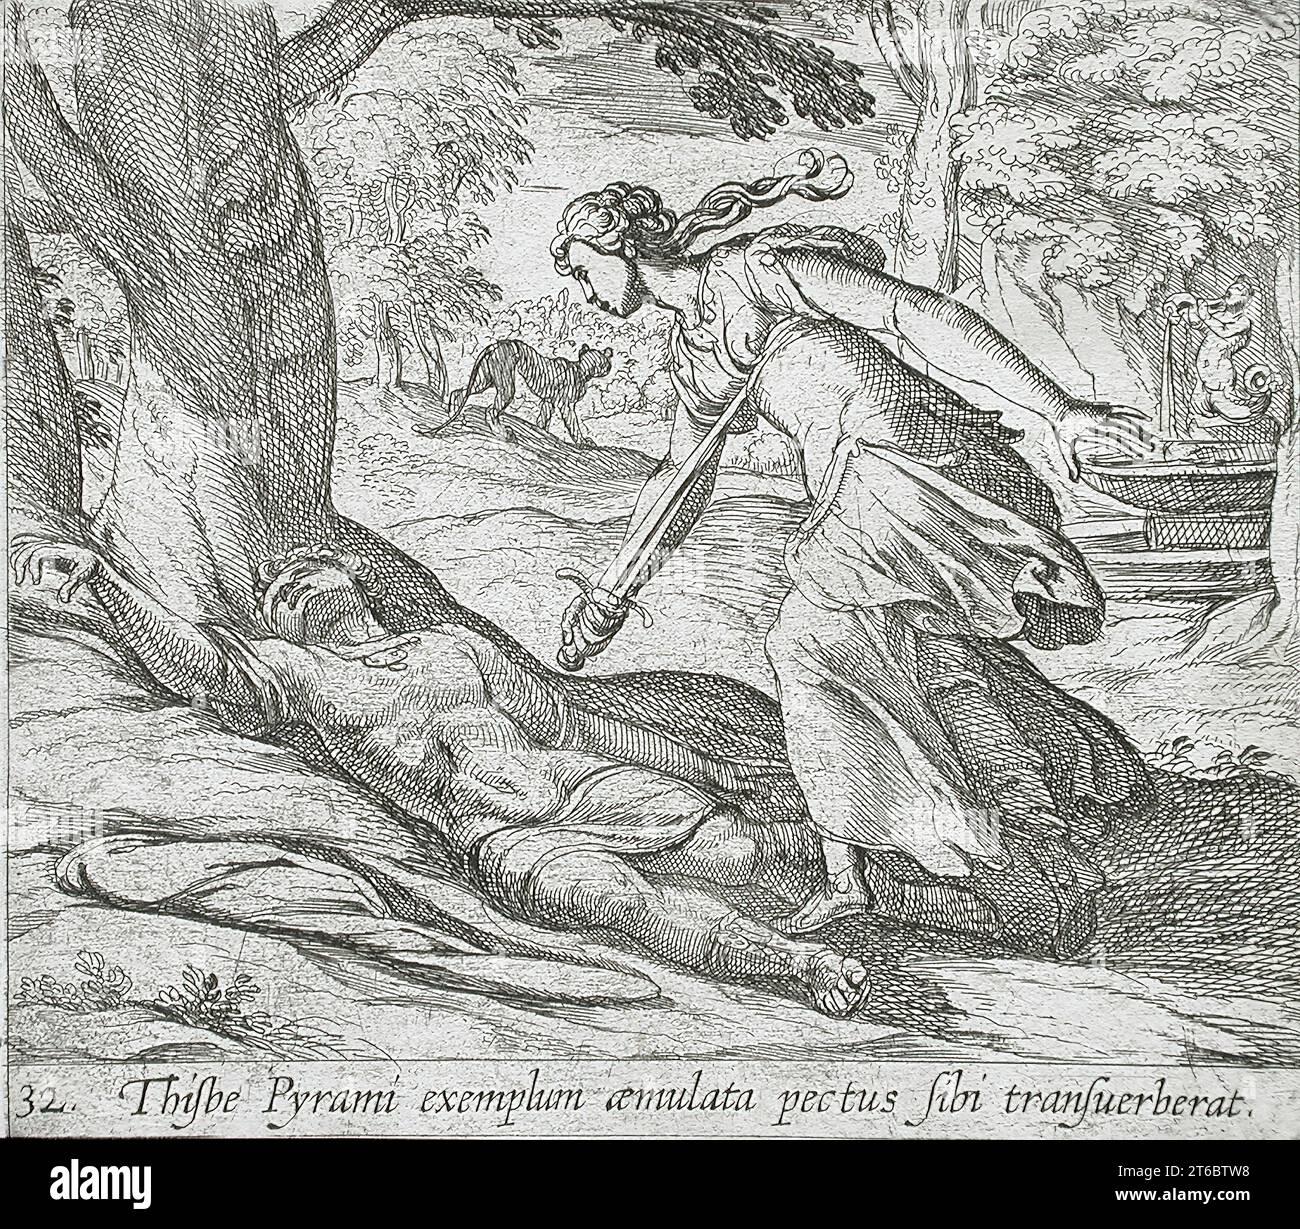 Thisbe Killing se stessa, pubblicato nel 1606. Dalle Metamorfosi di Ovidio, PL. 32. Foto Stock